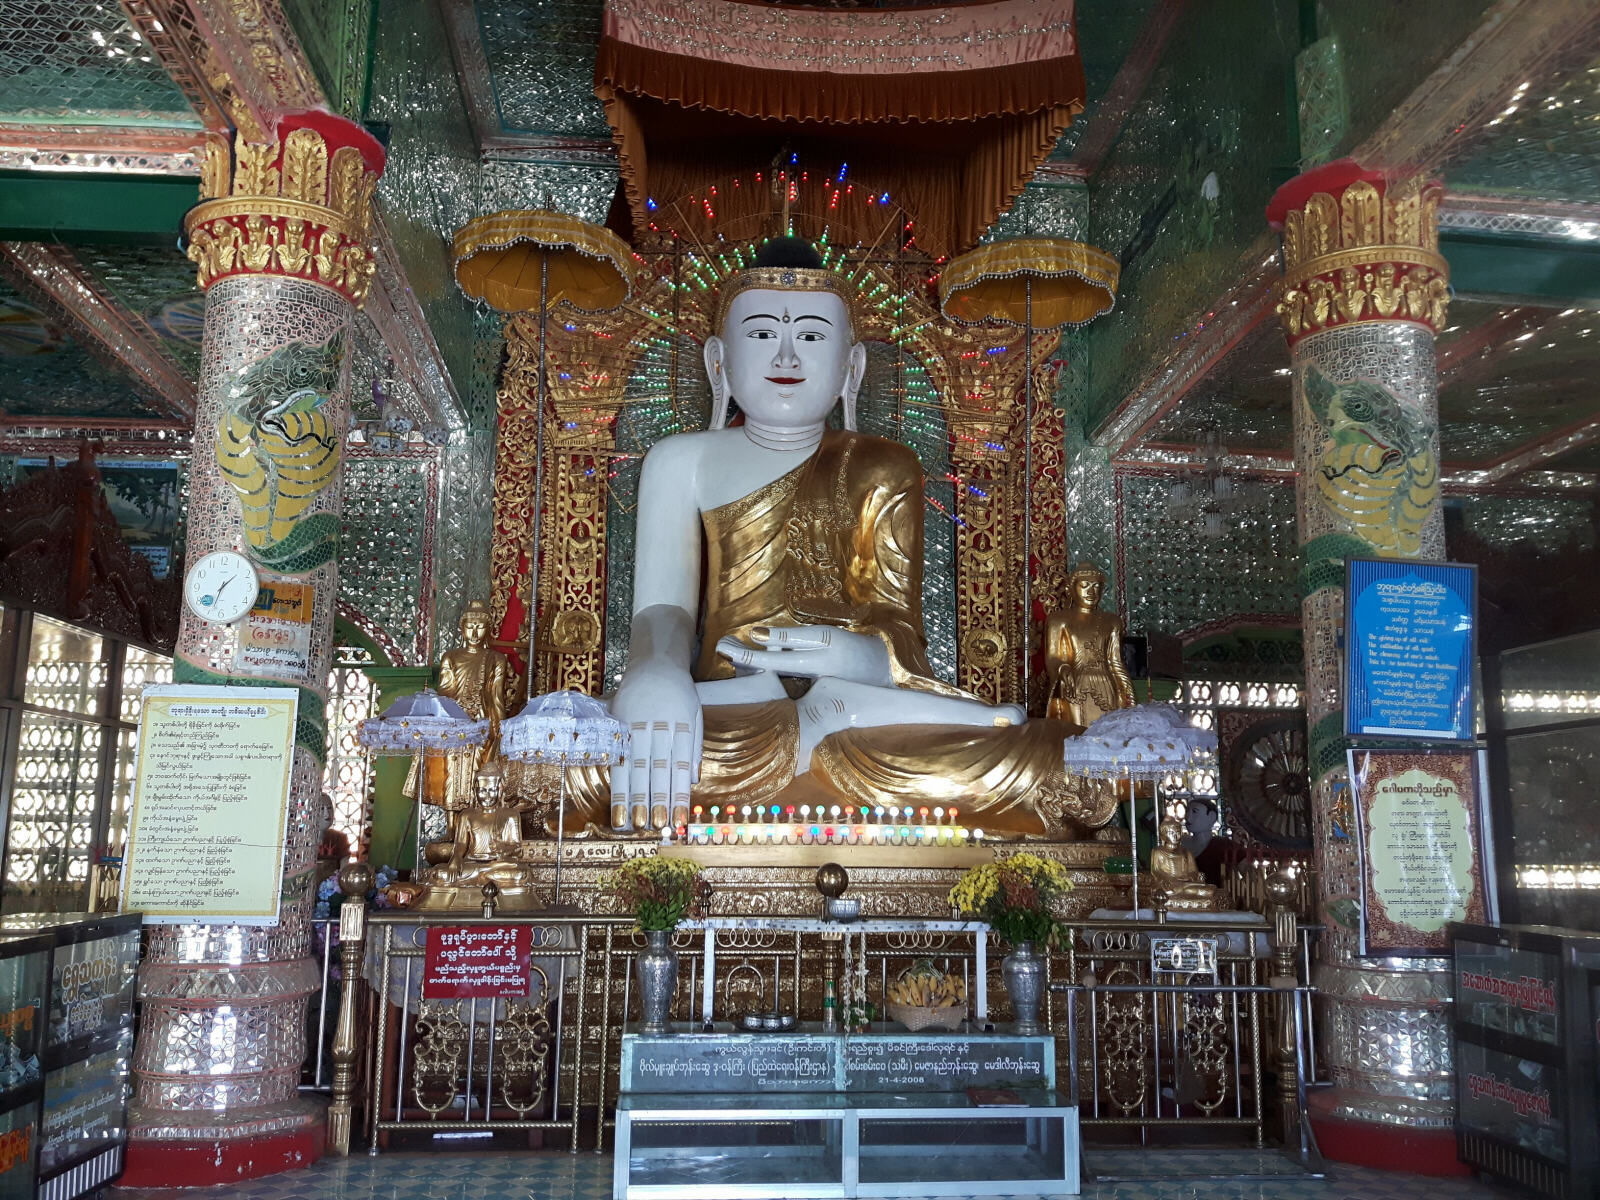 The Buddha at Sagaing Hill near Mandalay